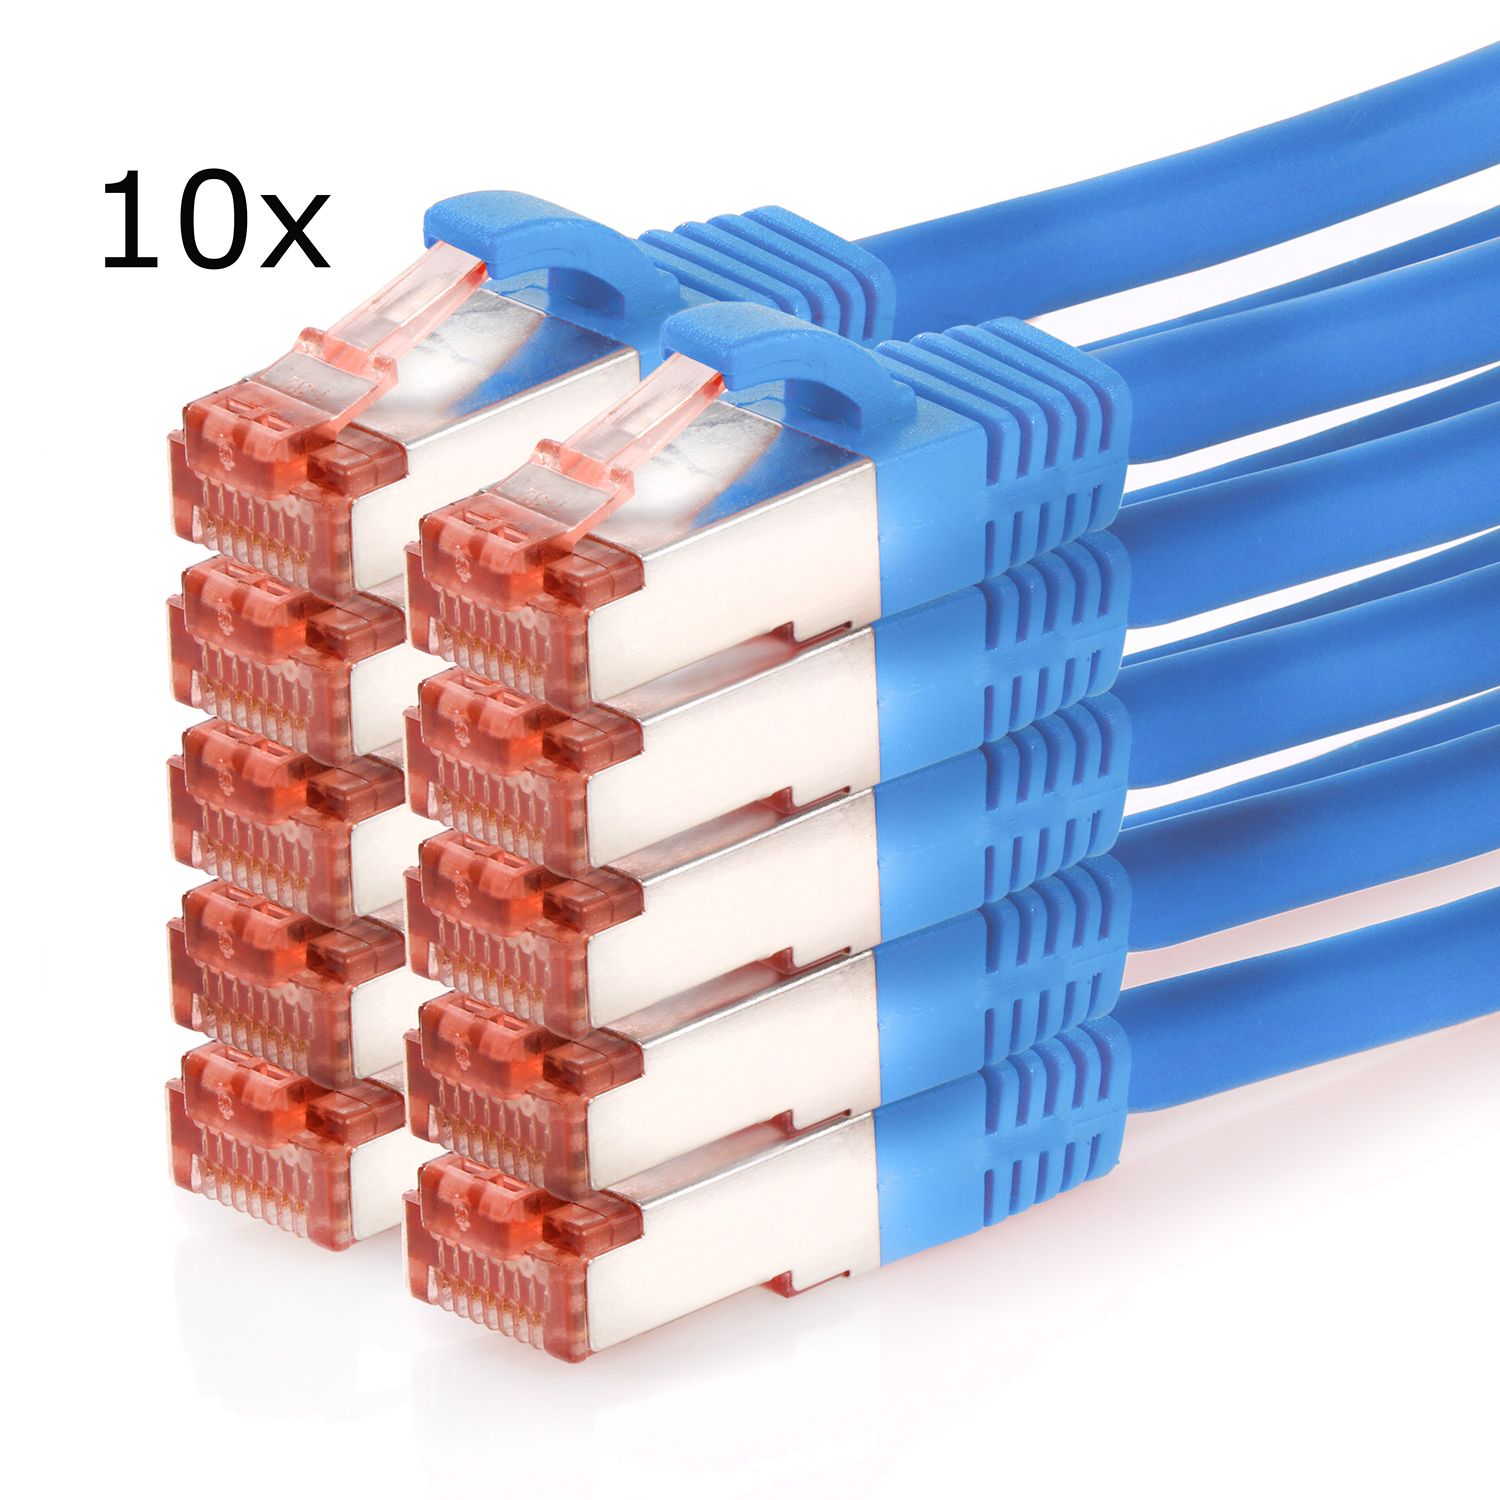 TPFNET 10er Pack 3m Netzwerkkabel, S/FTP Netzwerkkabel 1000Mbit, blau, / m 3 Patchkabel